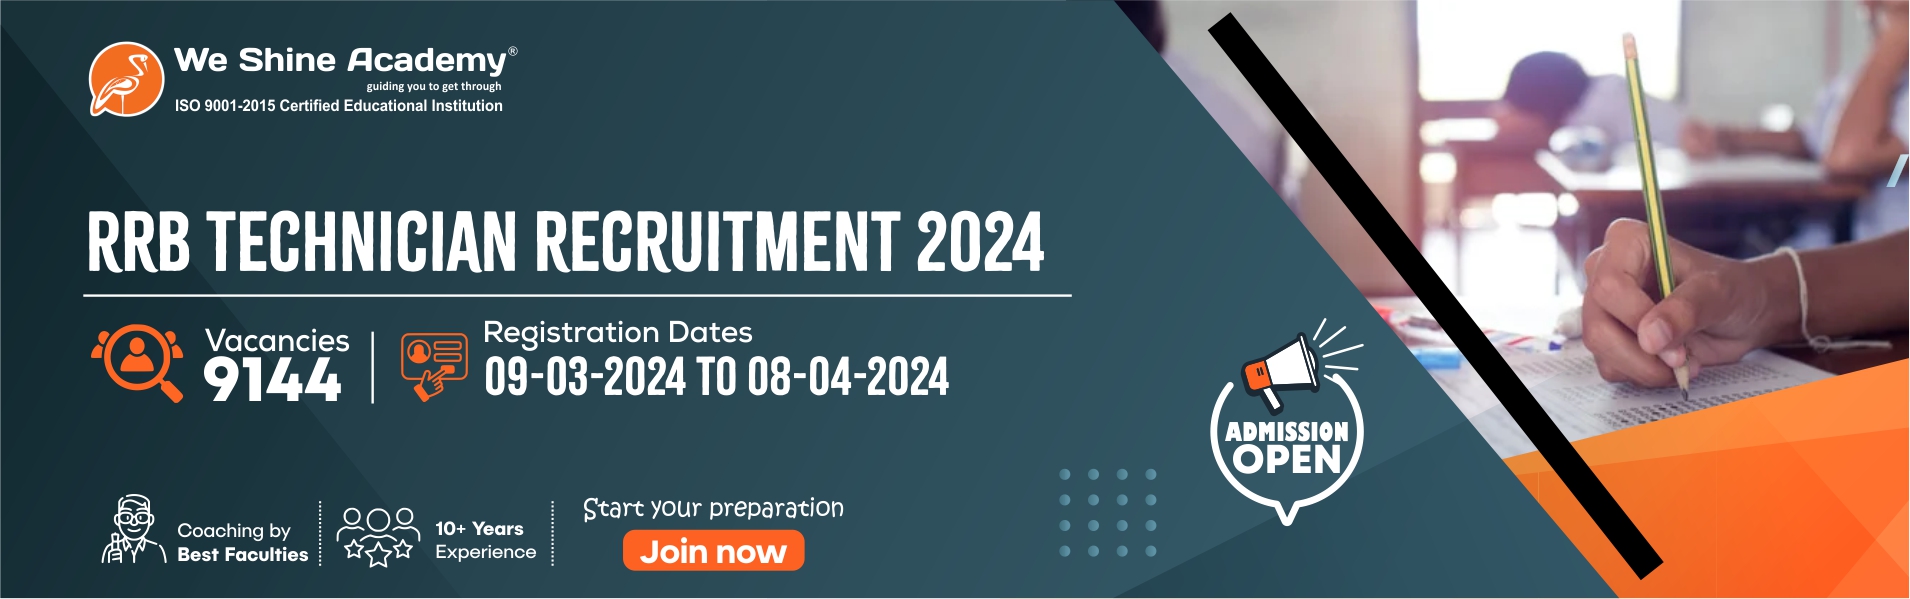 RRB-TechnicianRecruitment-2024